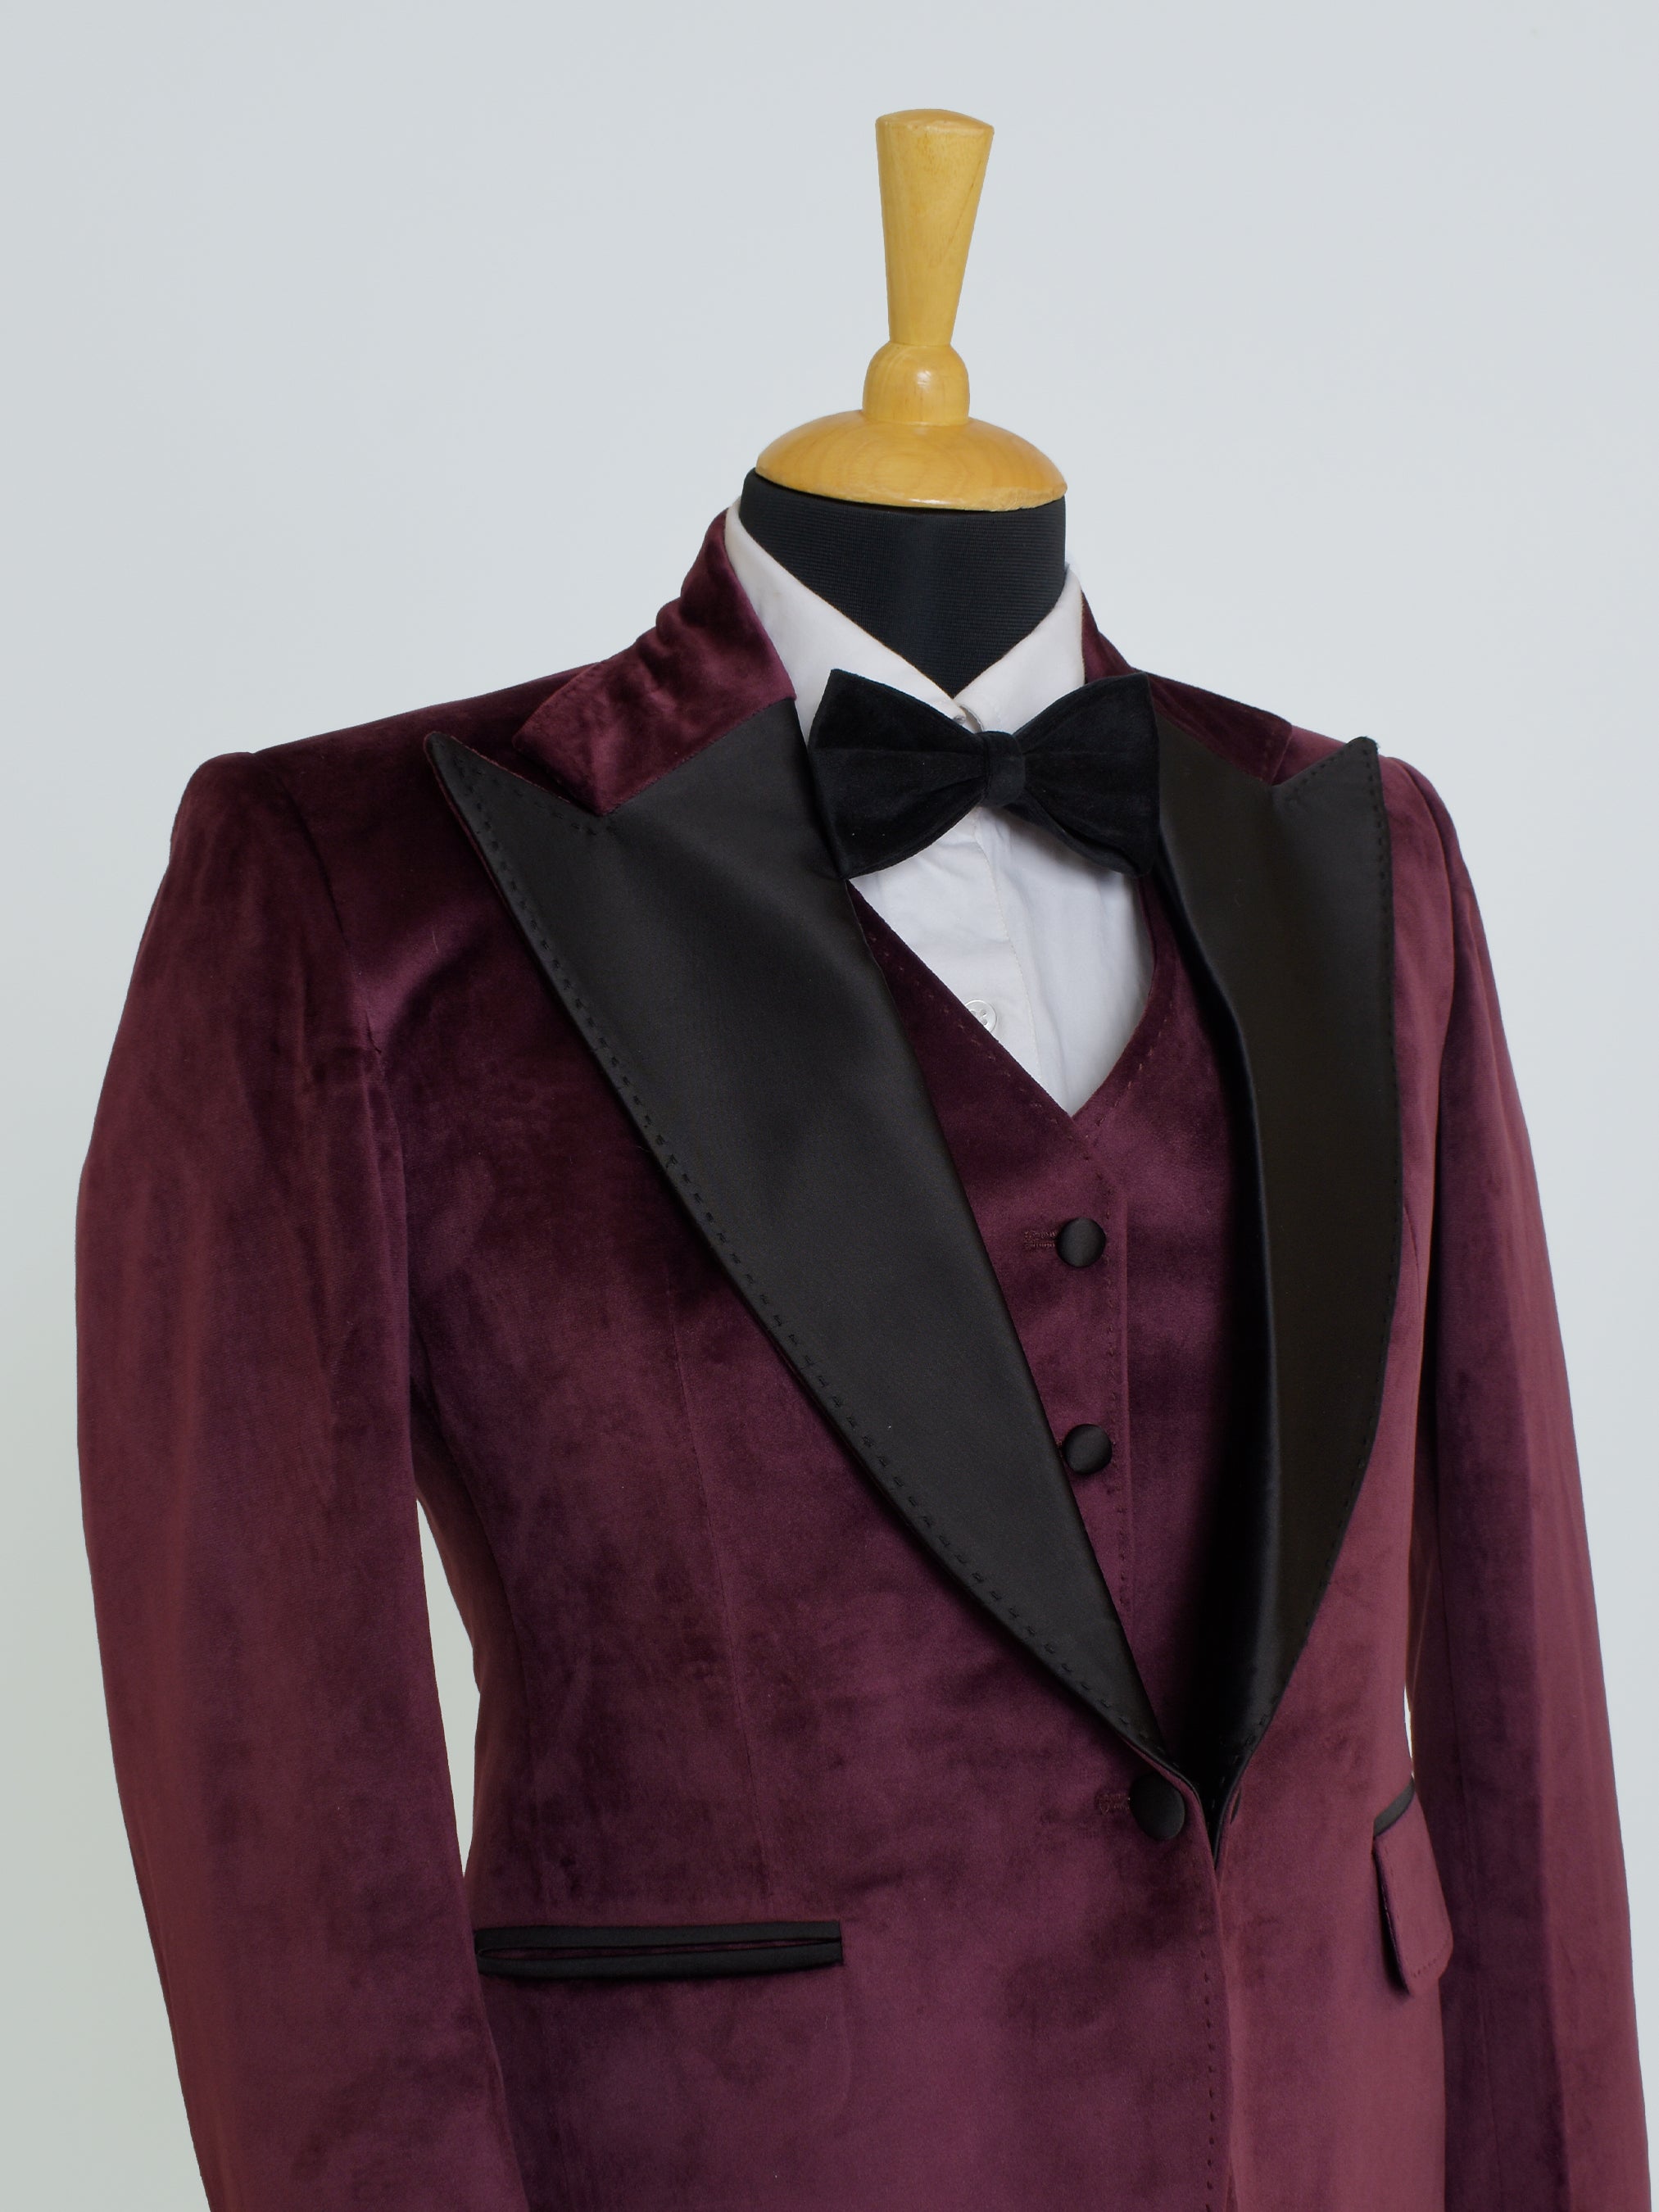 The Bordeaux Tuxedo Suit